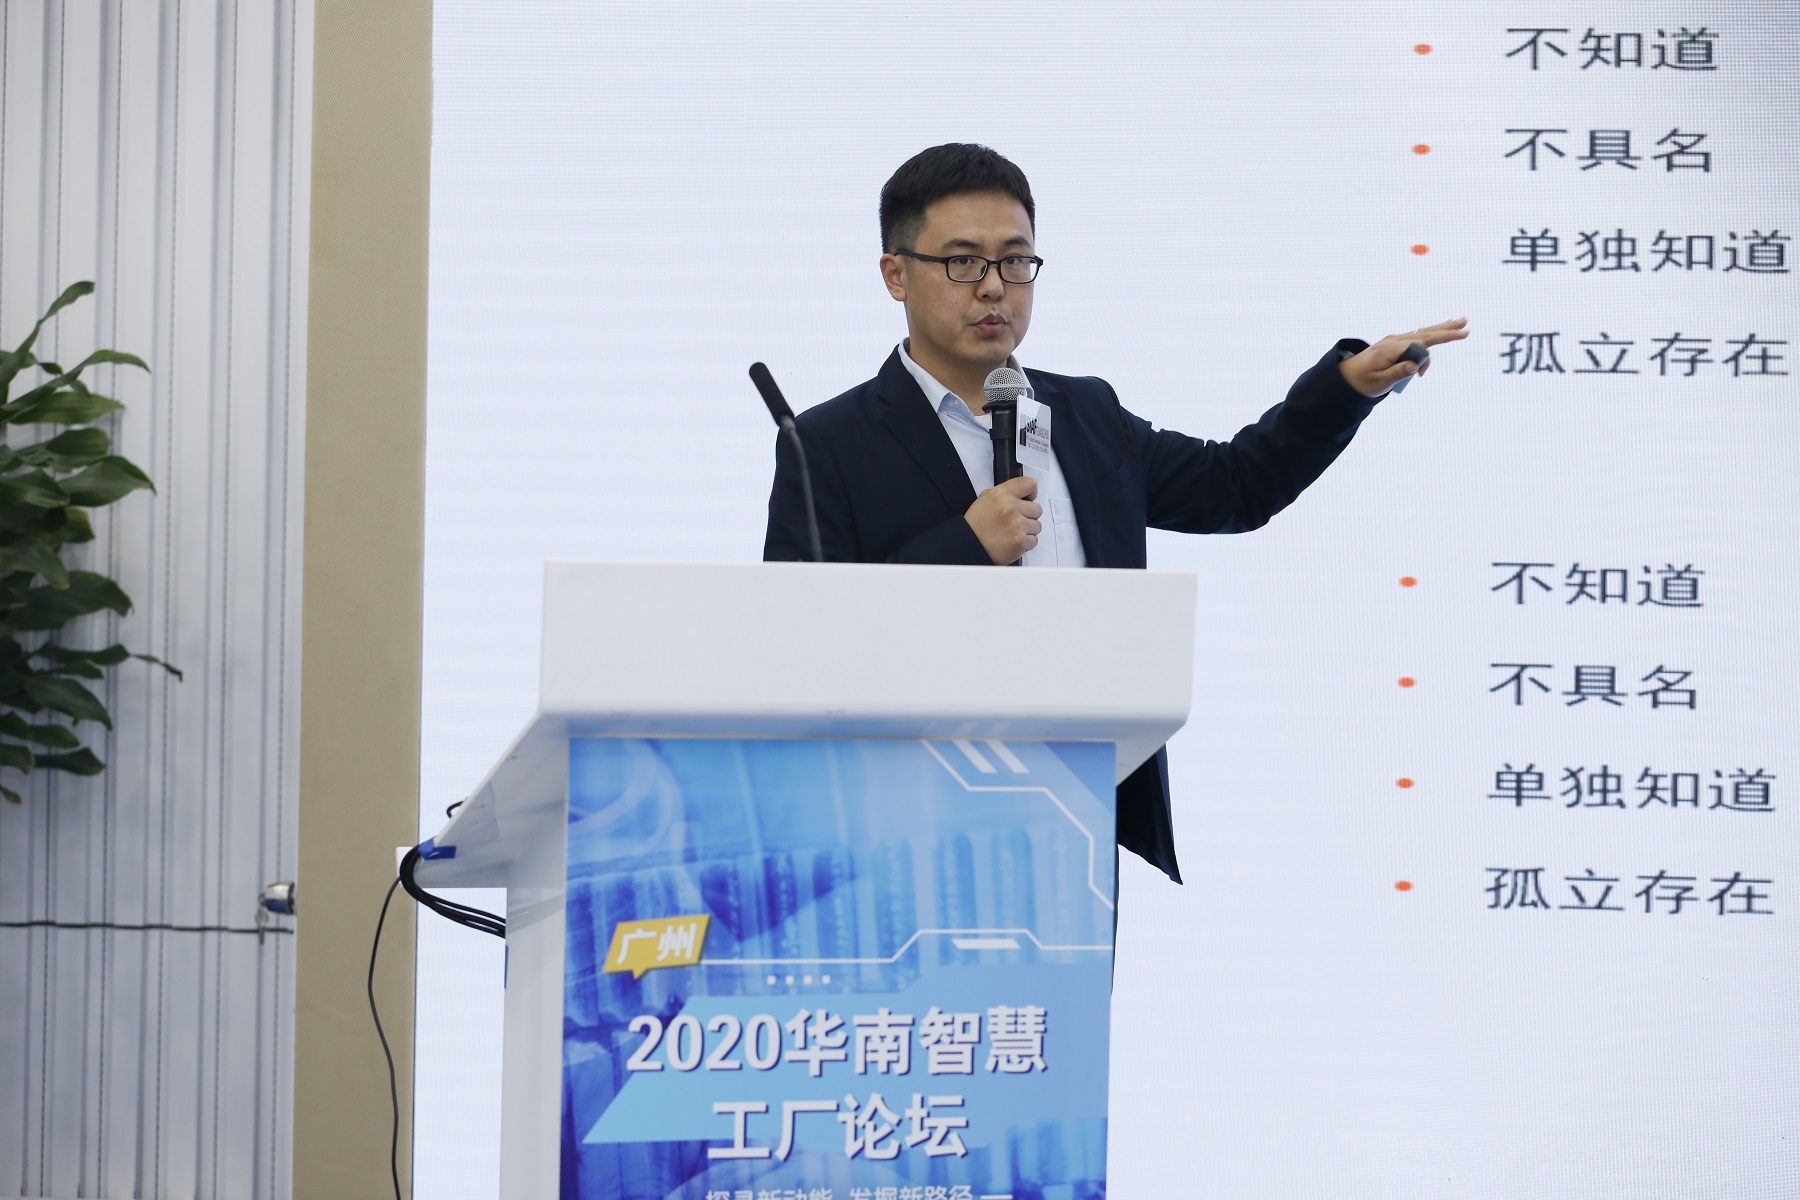 库伯勒(北京)自动化设备公司产品经理张贯学